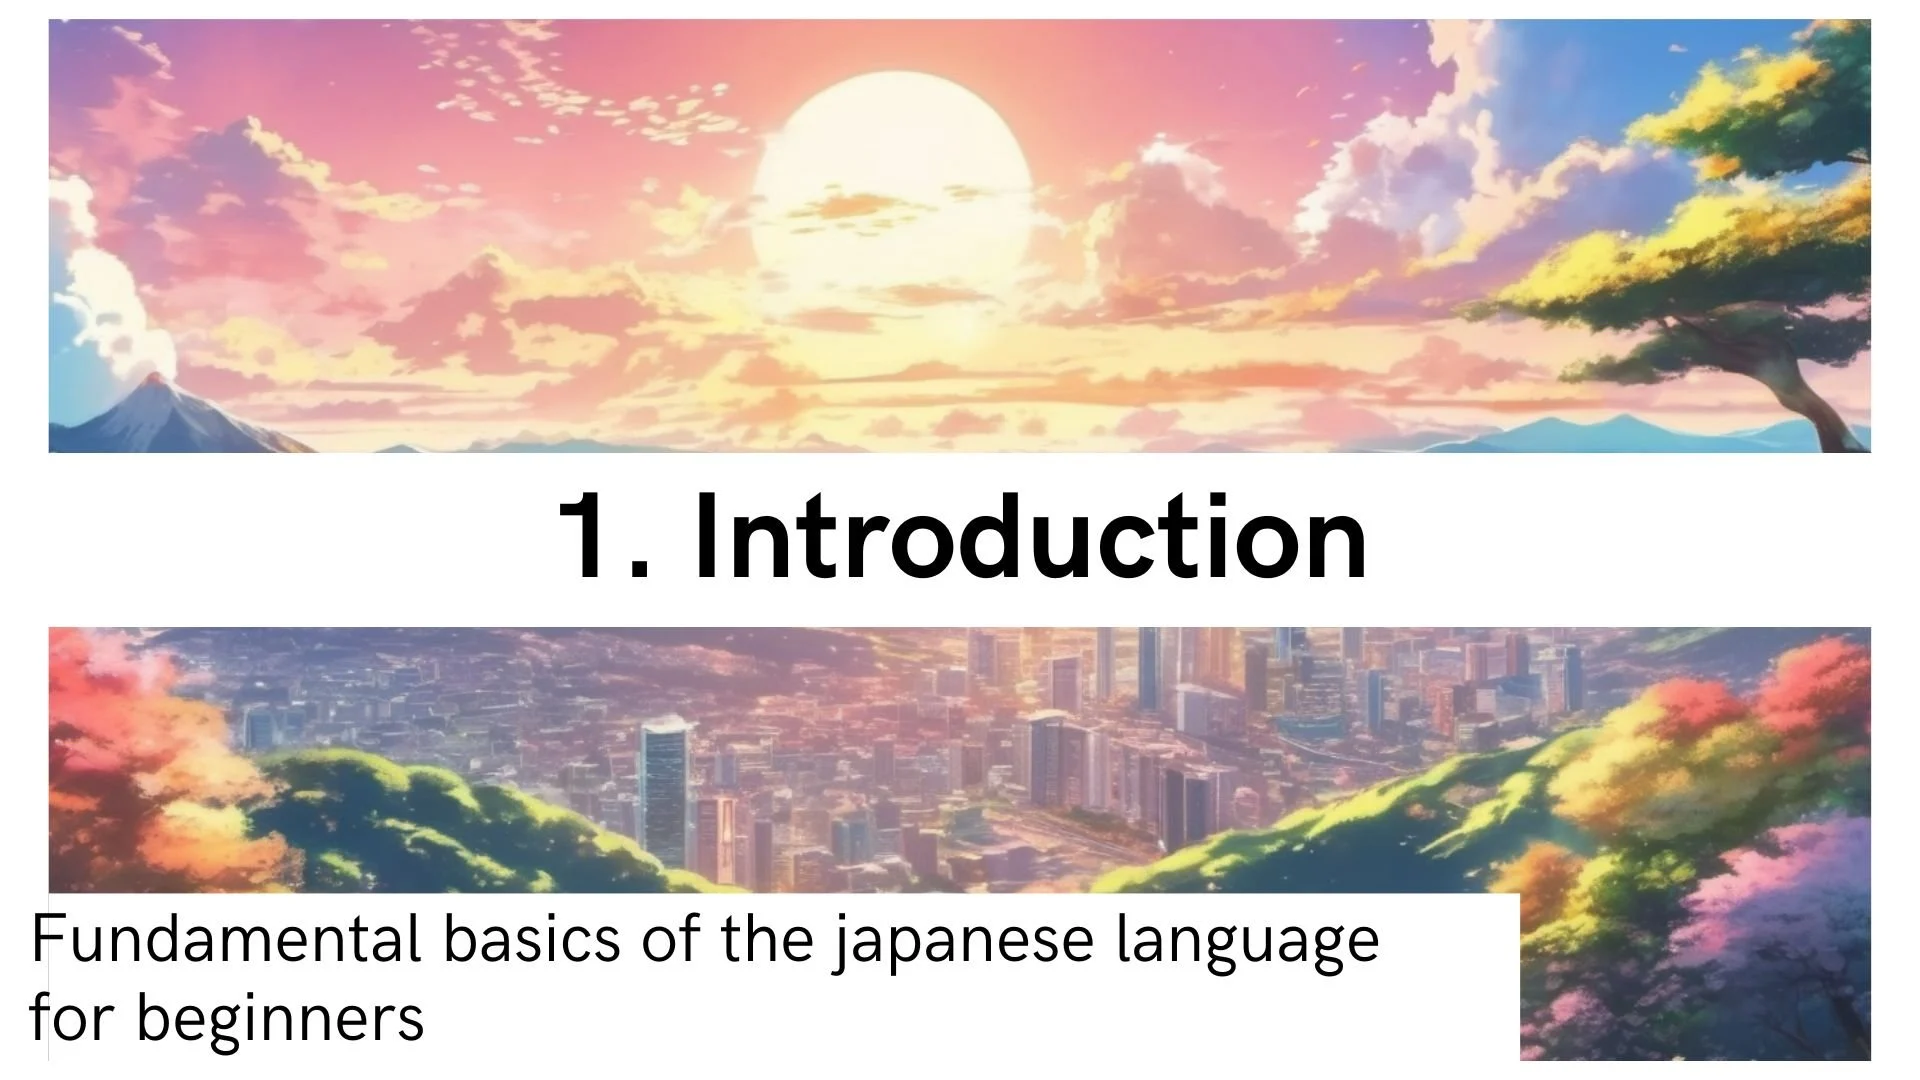 آموزش مبانی اساسی زبان ژاپنی